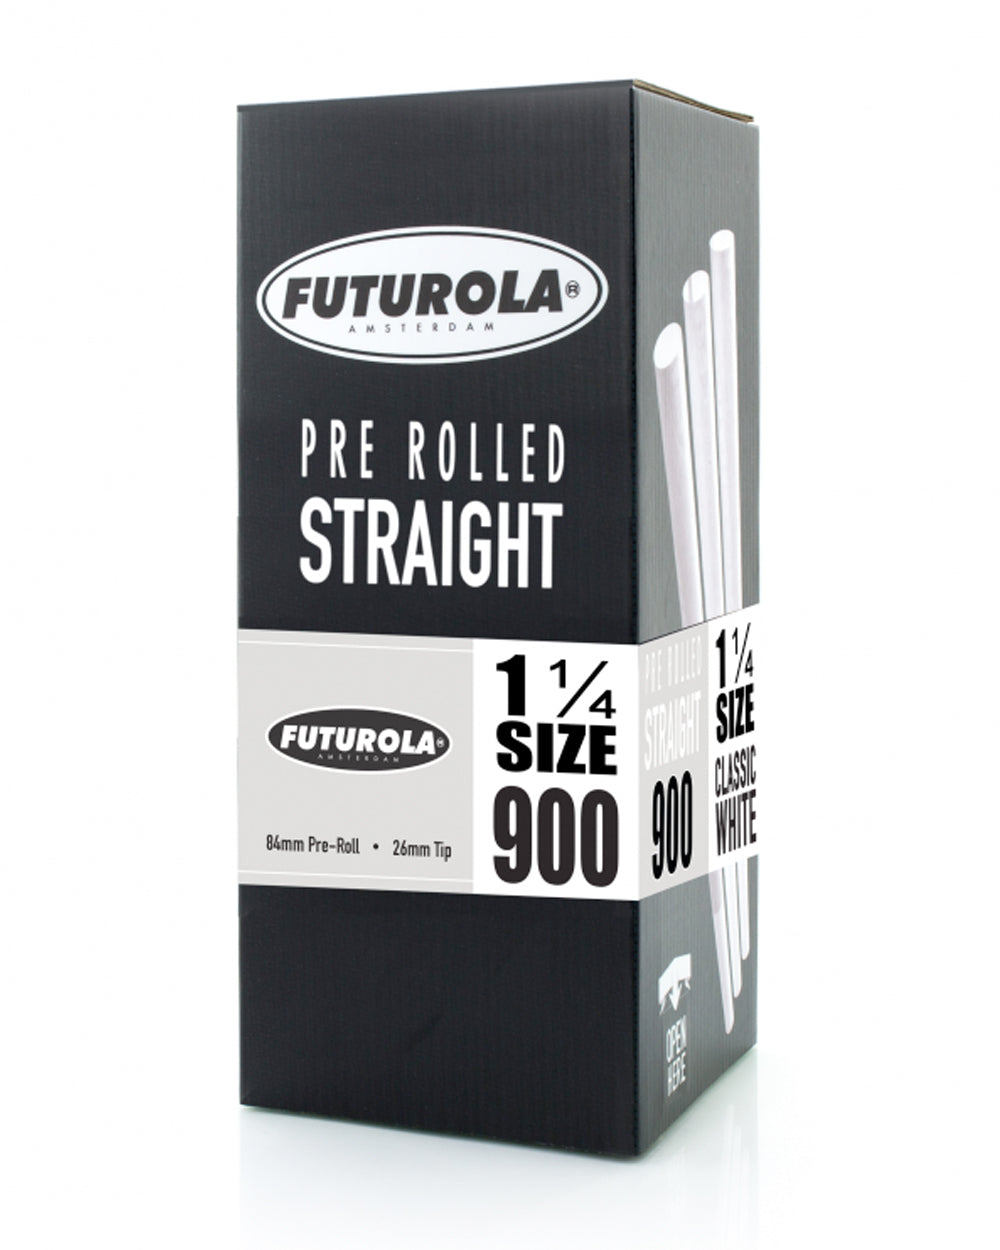 FUTUROLA | Straight 1 1/4 Size Pre-Rolled Cones | 84mm - Classic White Paper - 900 Count - 1